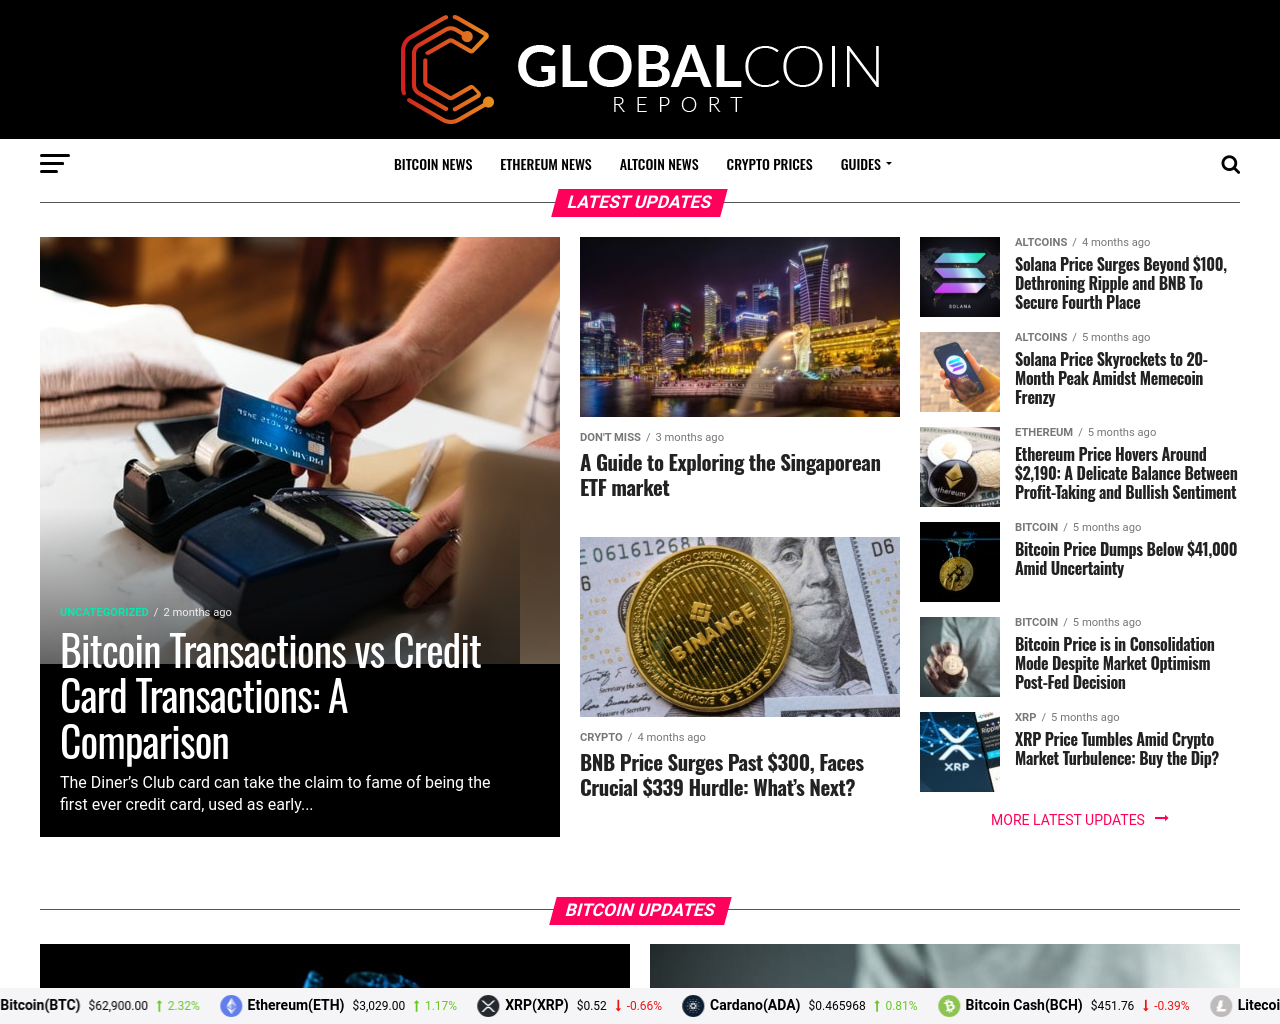 globalcoinreport.com